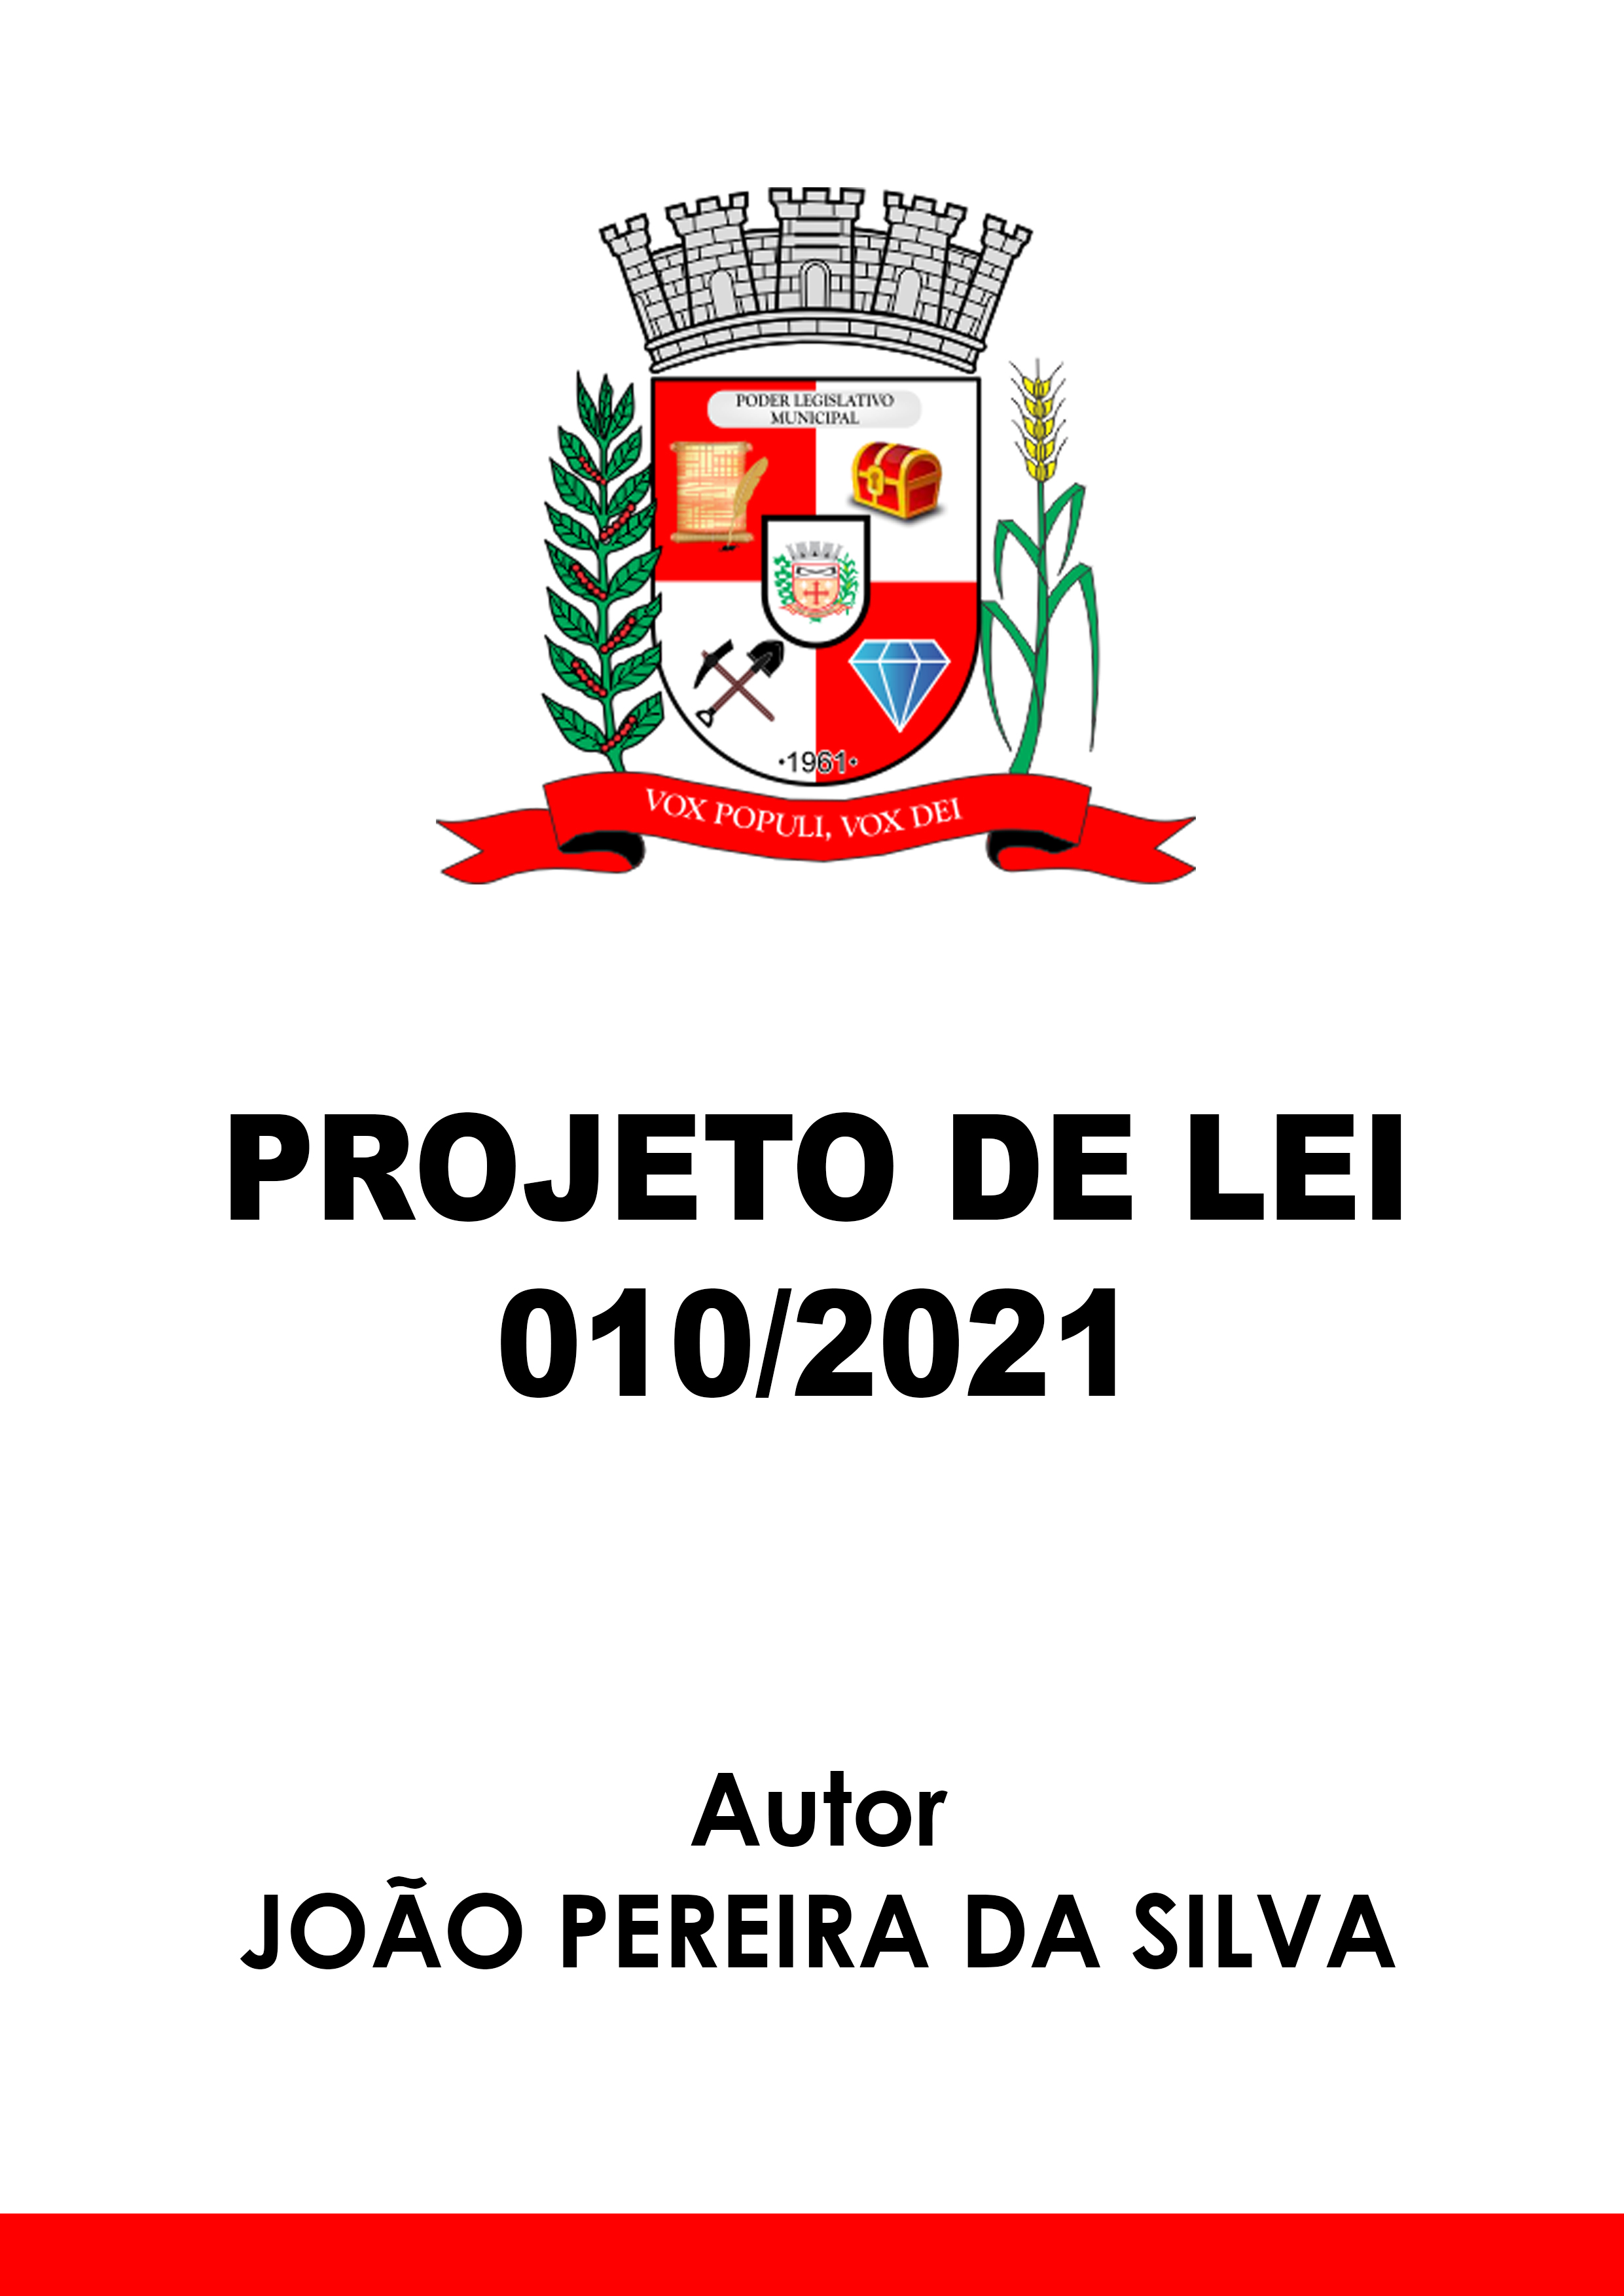 Projeto de Lei 010/2021 - Autor: João Pereira da Silva